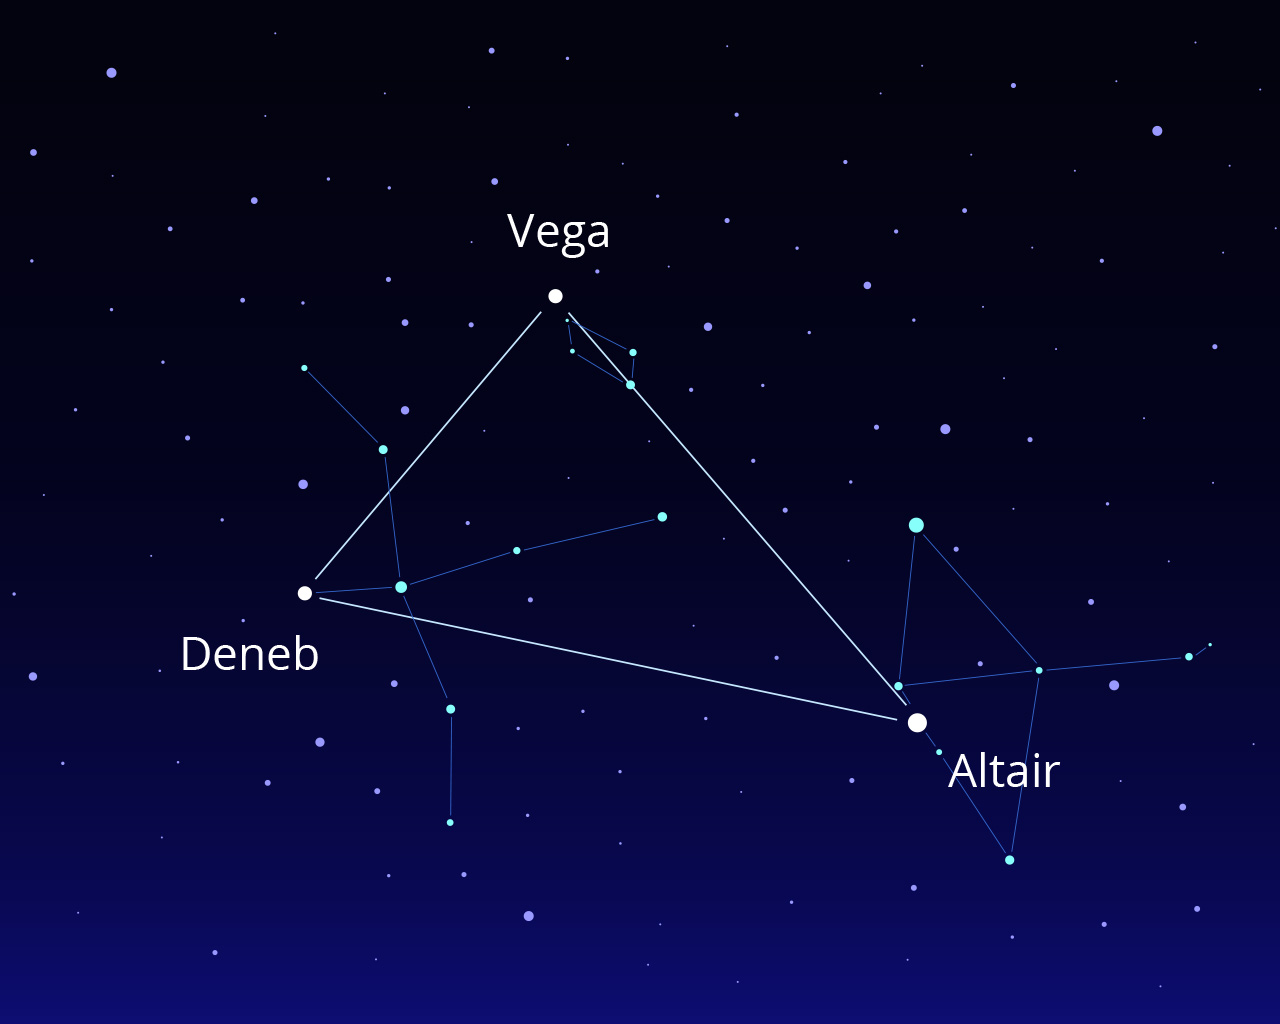 Slika tri zvijezde na nebu (Vega, Altair, Denab) koje su u položaju pravokutnog trokuta